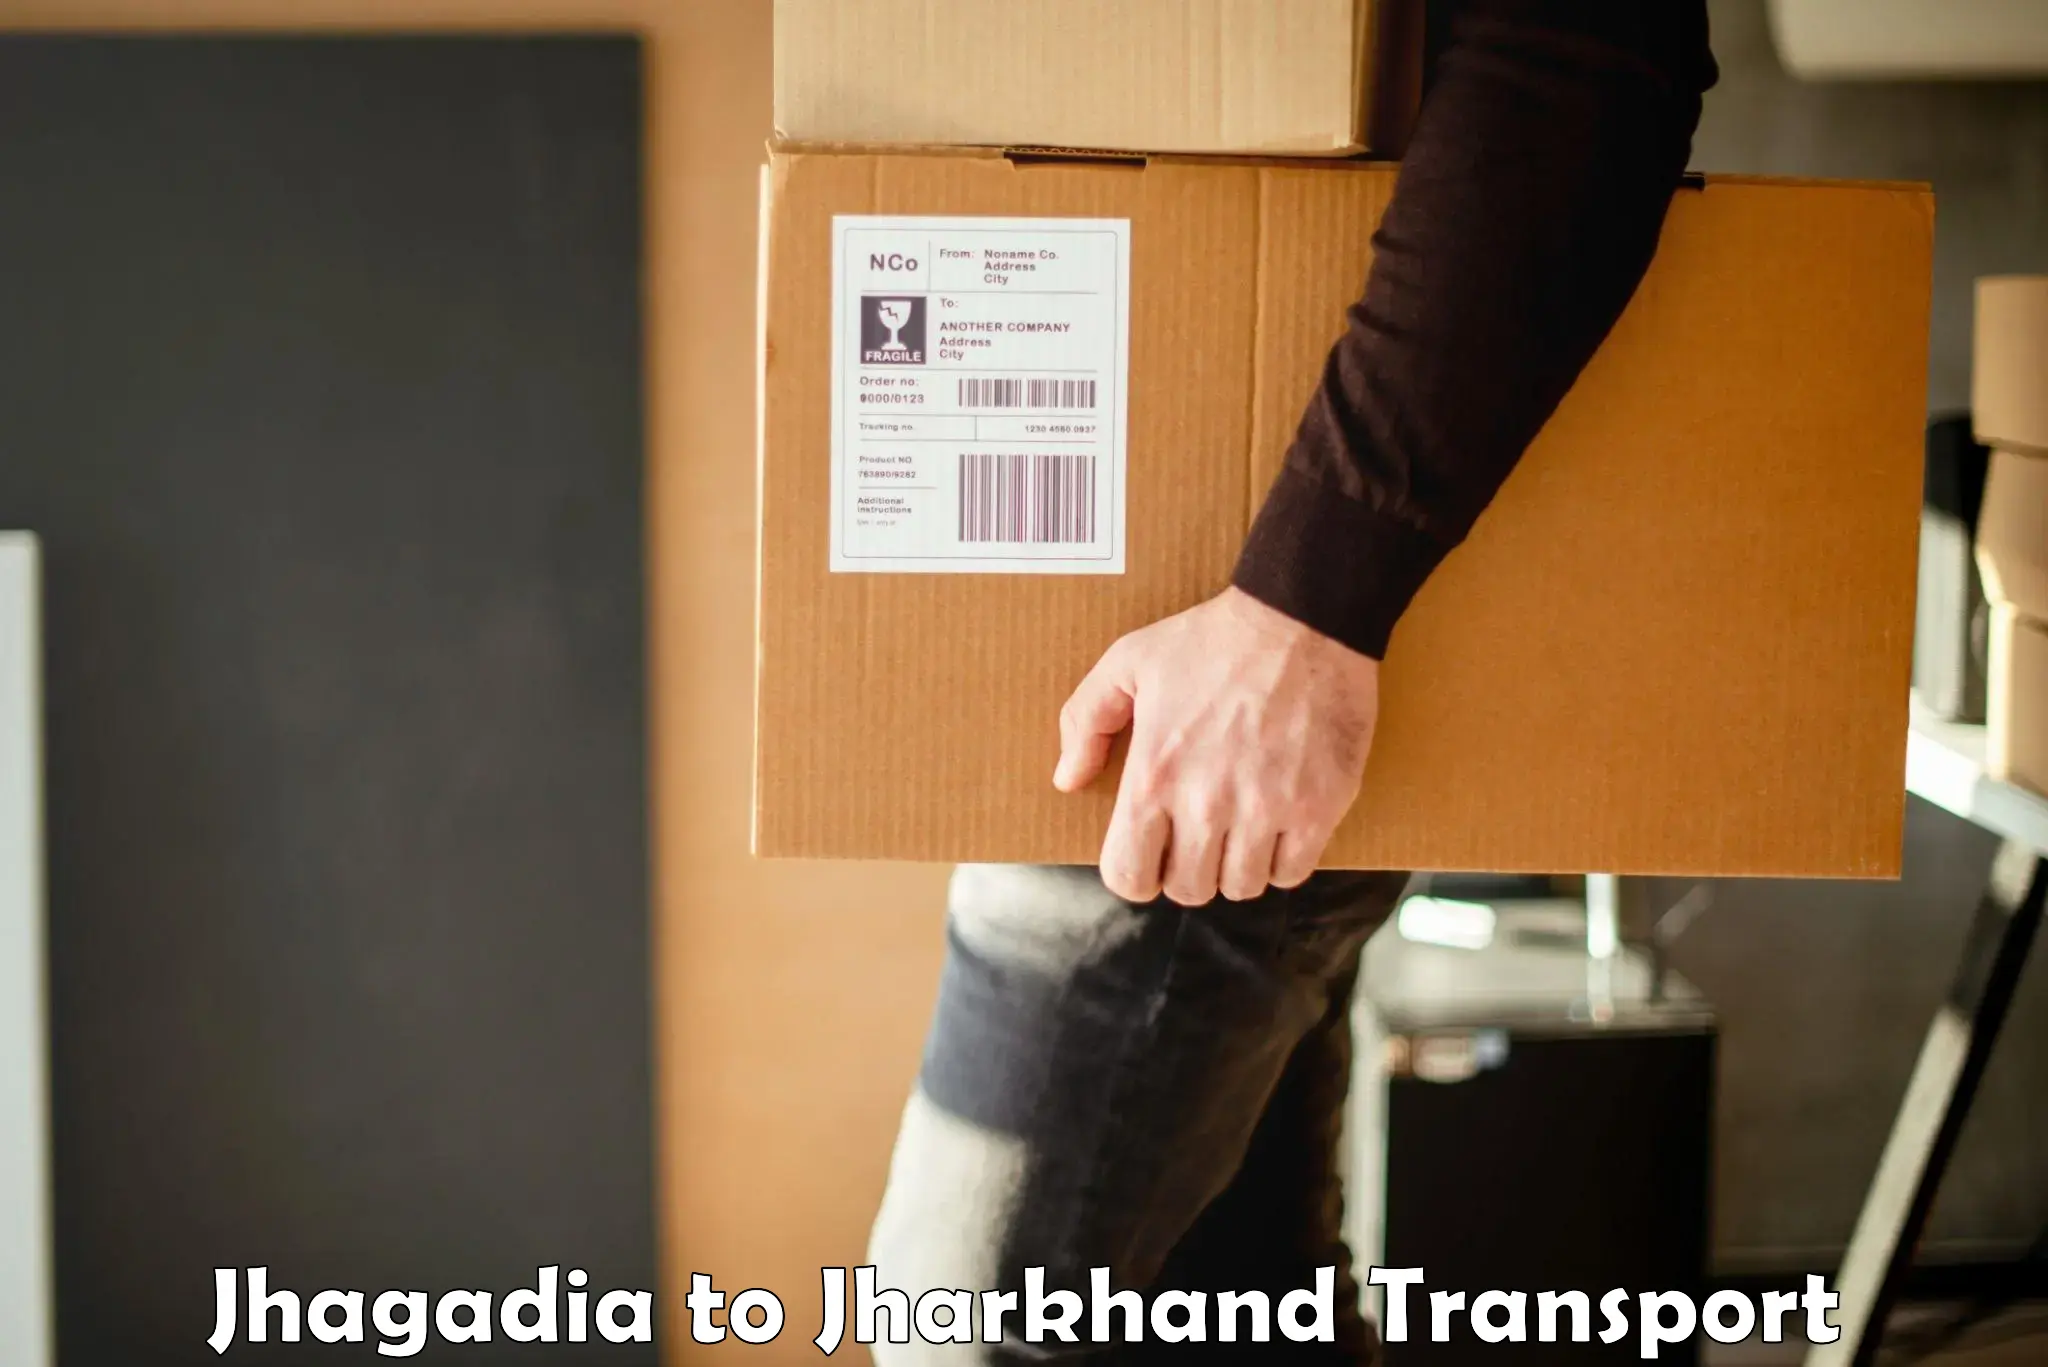 Nearest transport service Jhagadia to Mahagama